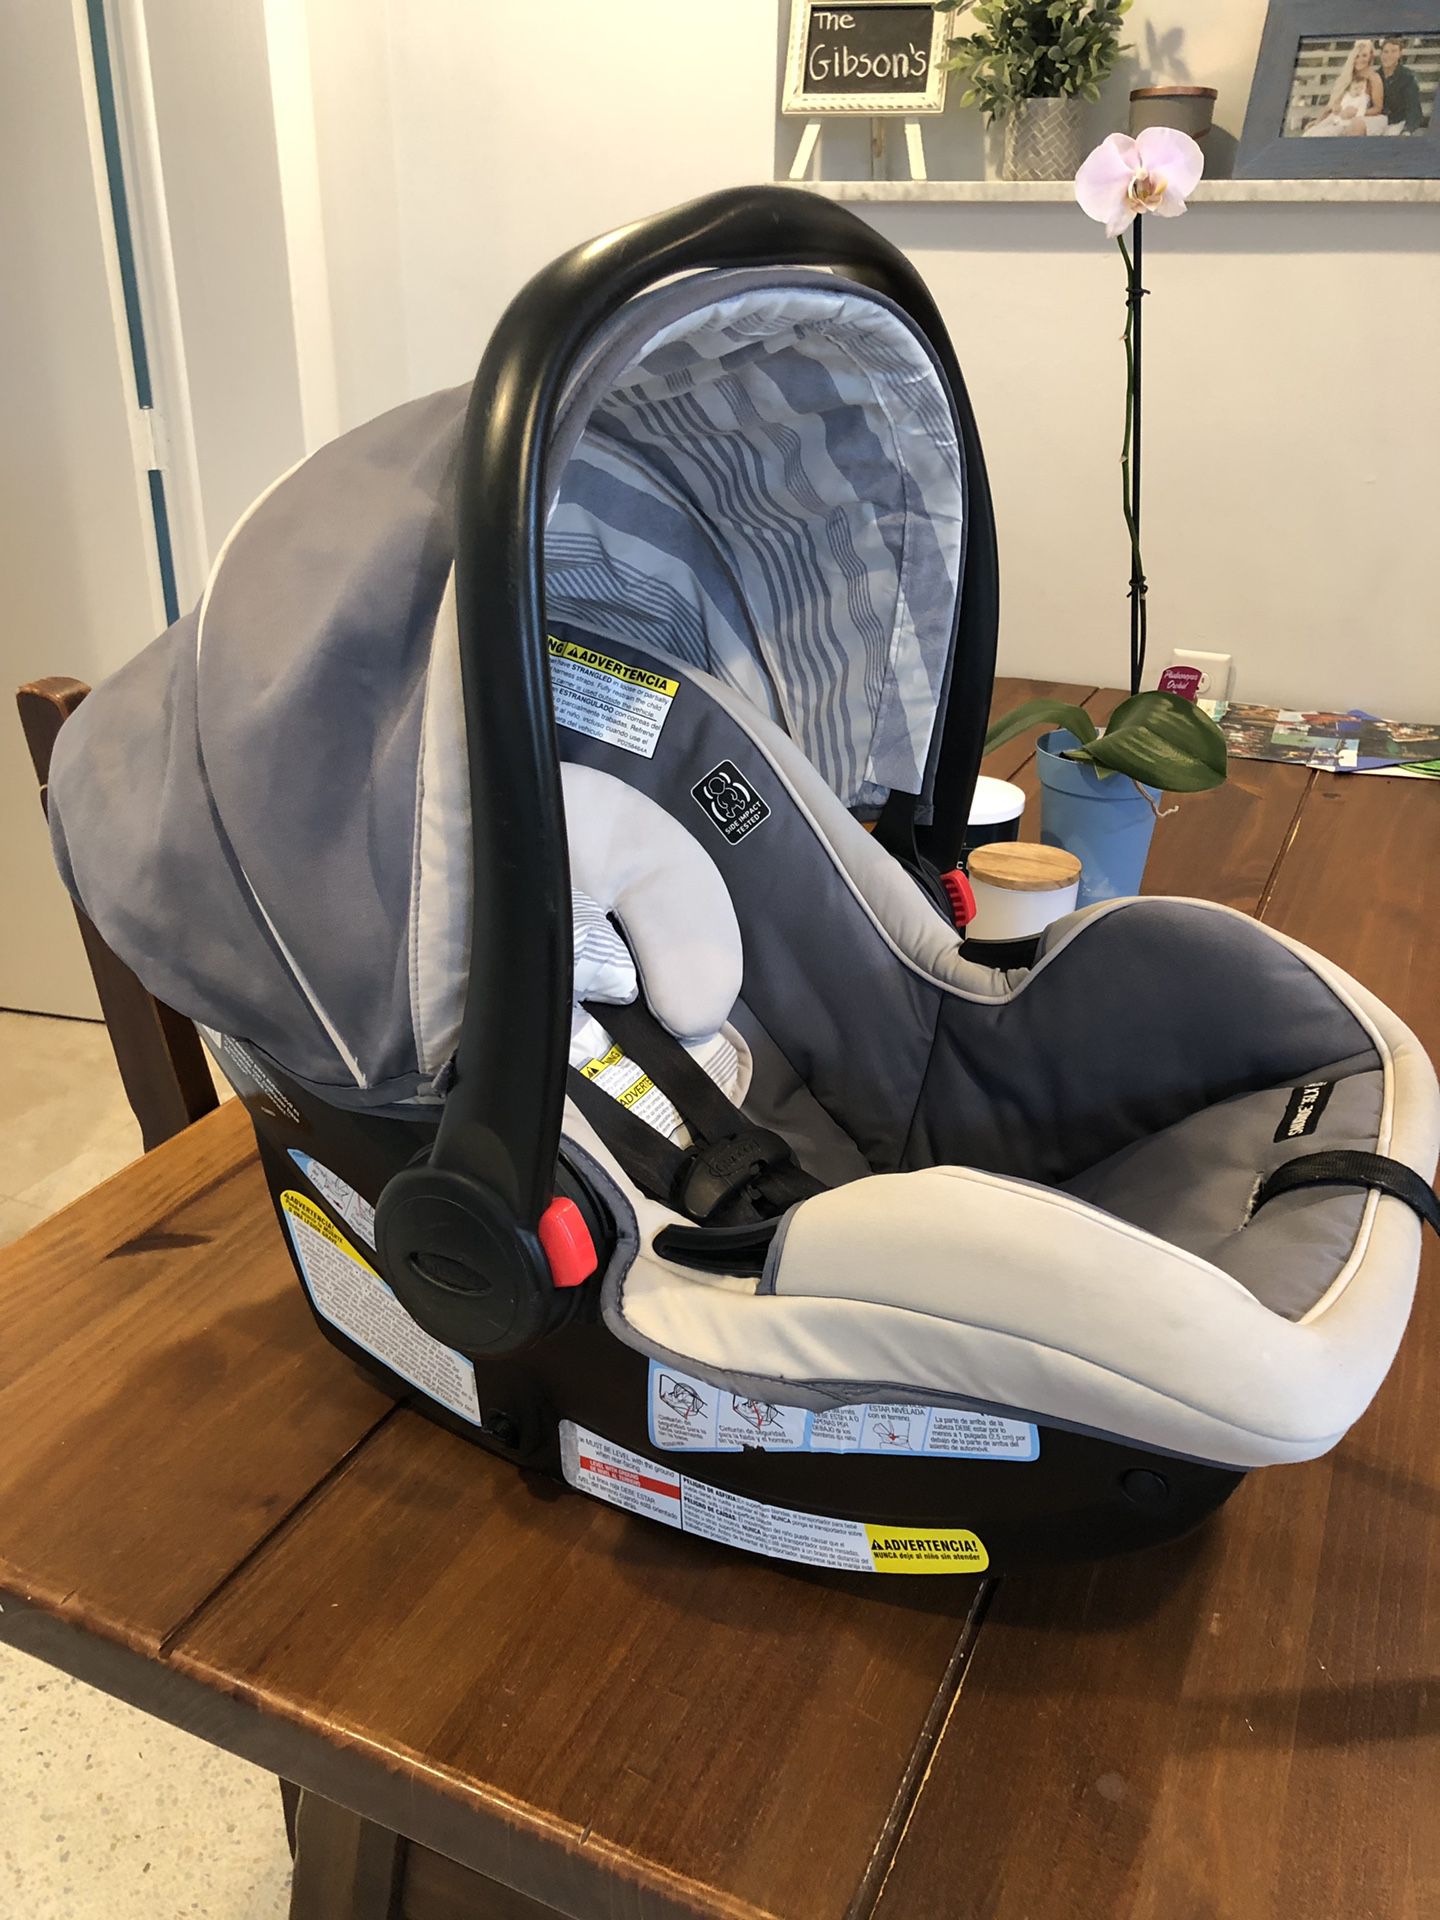 Graco Click Connect SnugRide 35LX infant car seat/carrier.